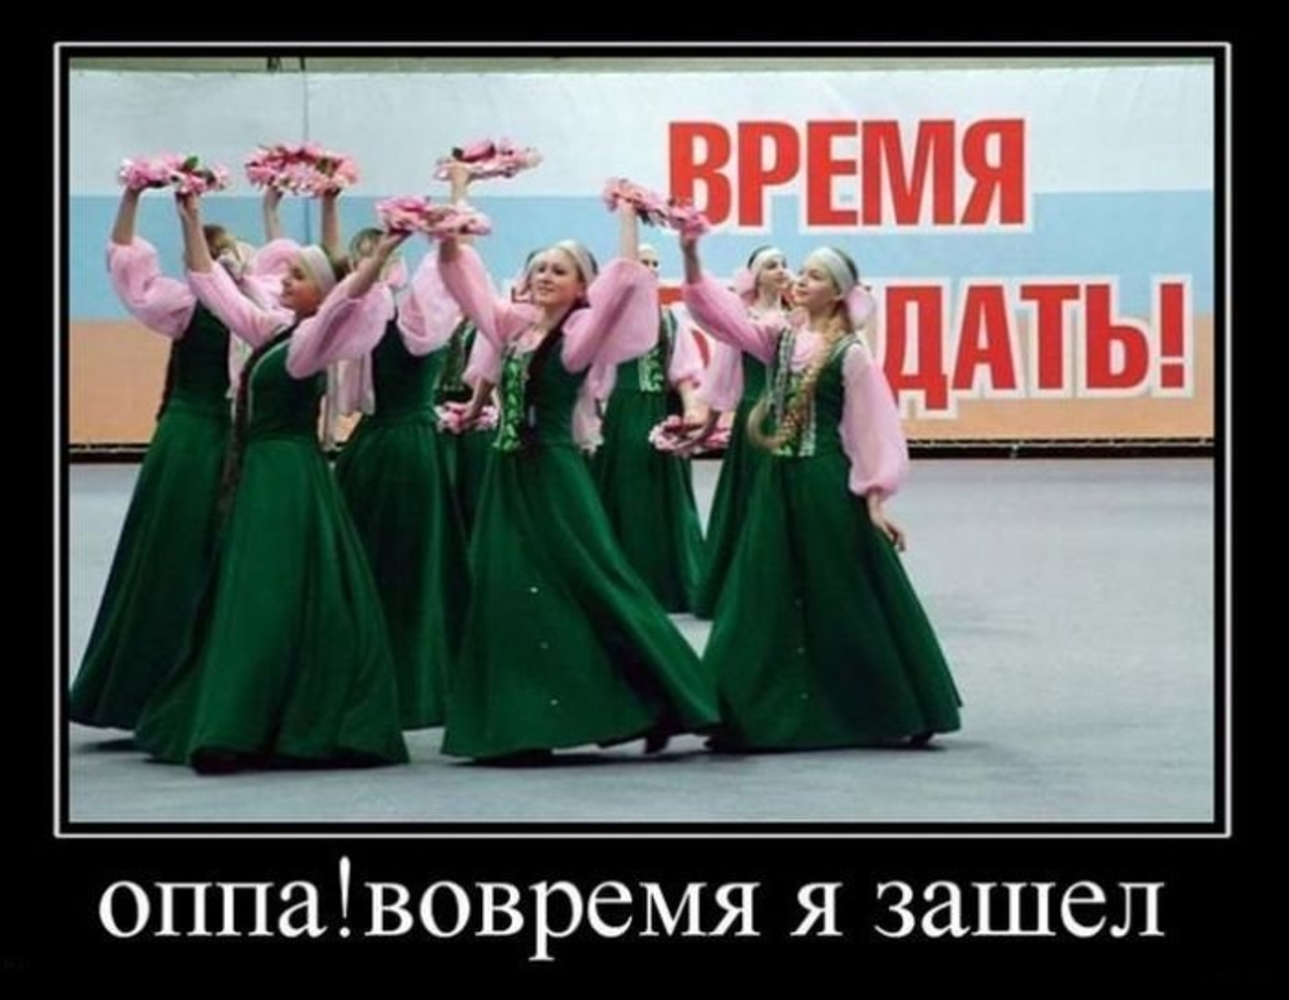 Русский человек ждет 3 вещи весну пятницу. Демотиваторы смешные. Приколы про весну и женщин. Приколы про весну и девушек.